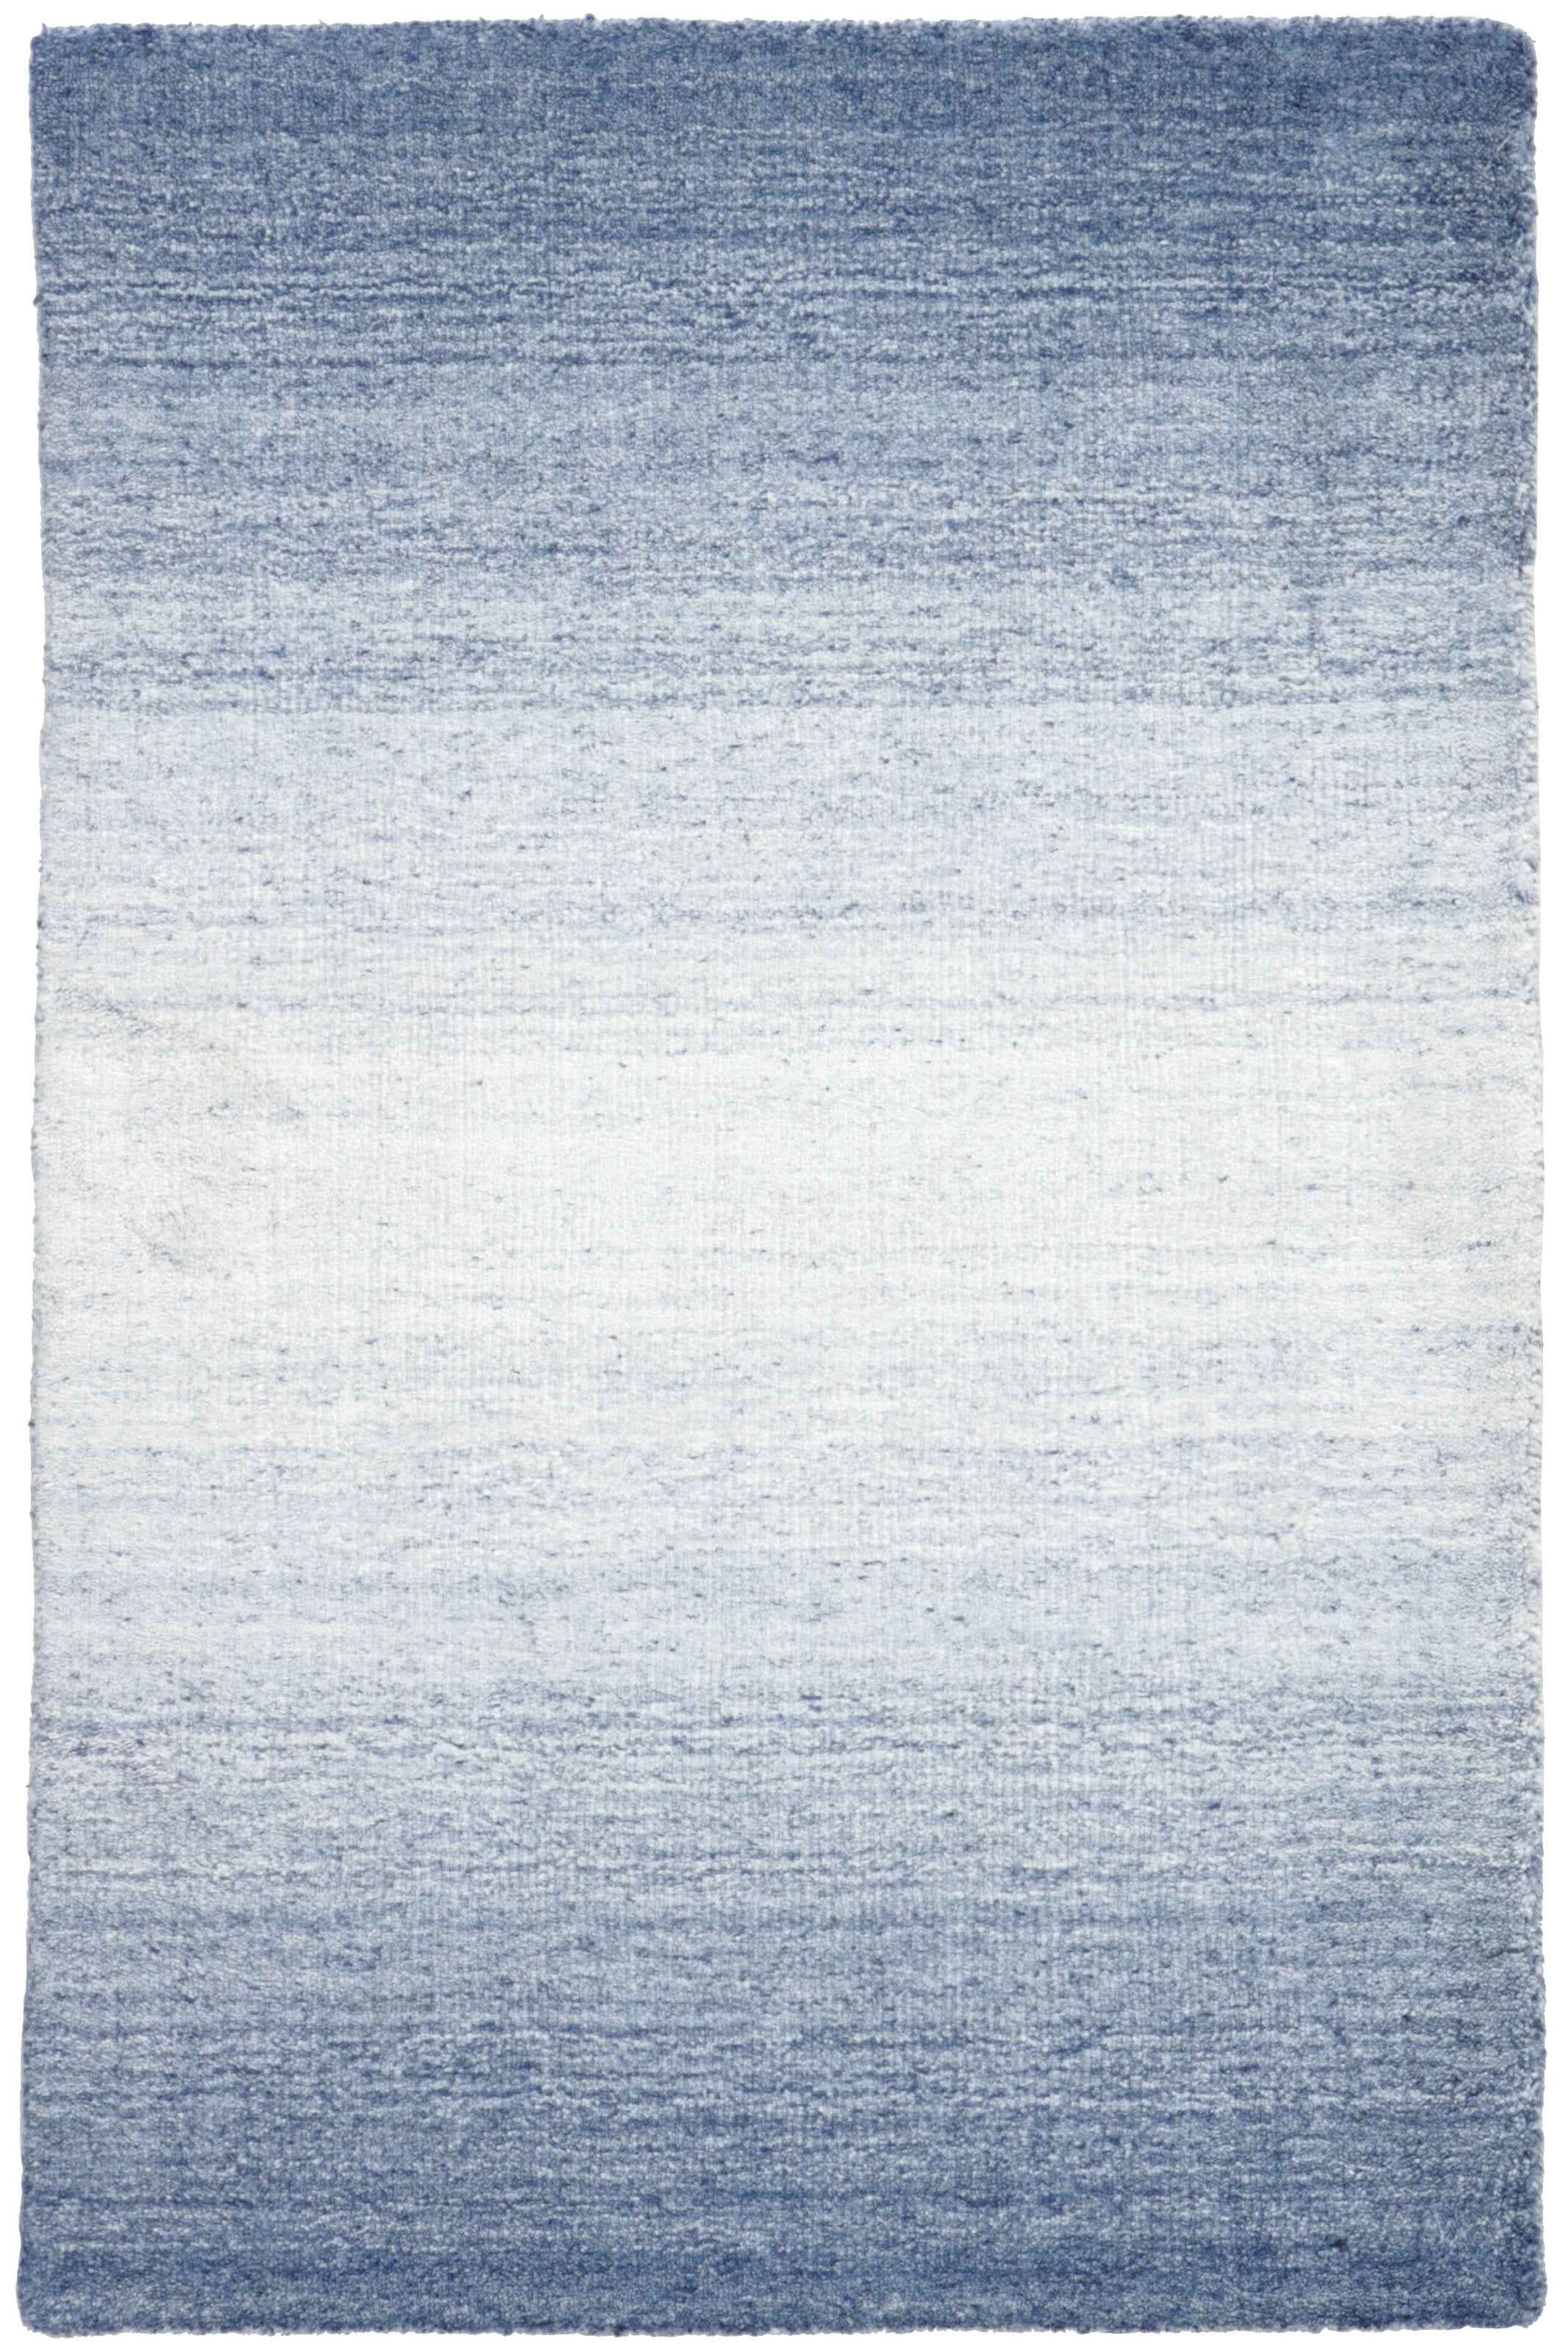 350x250 cm  Indian Wool/Viscose Blue Rug-Blau, Blue